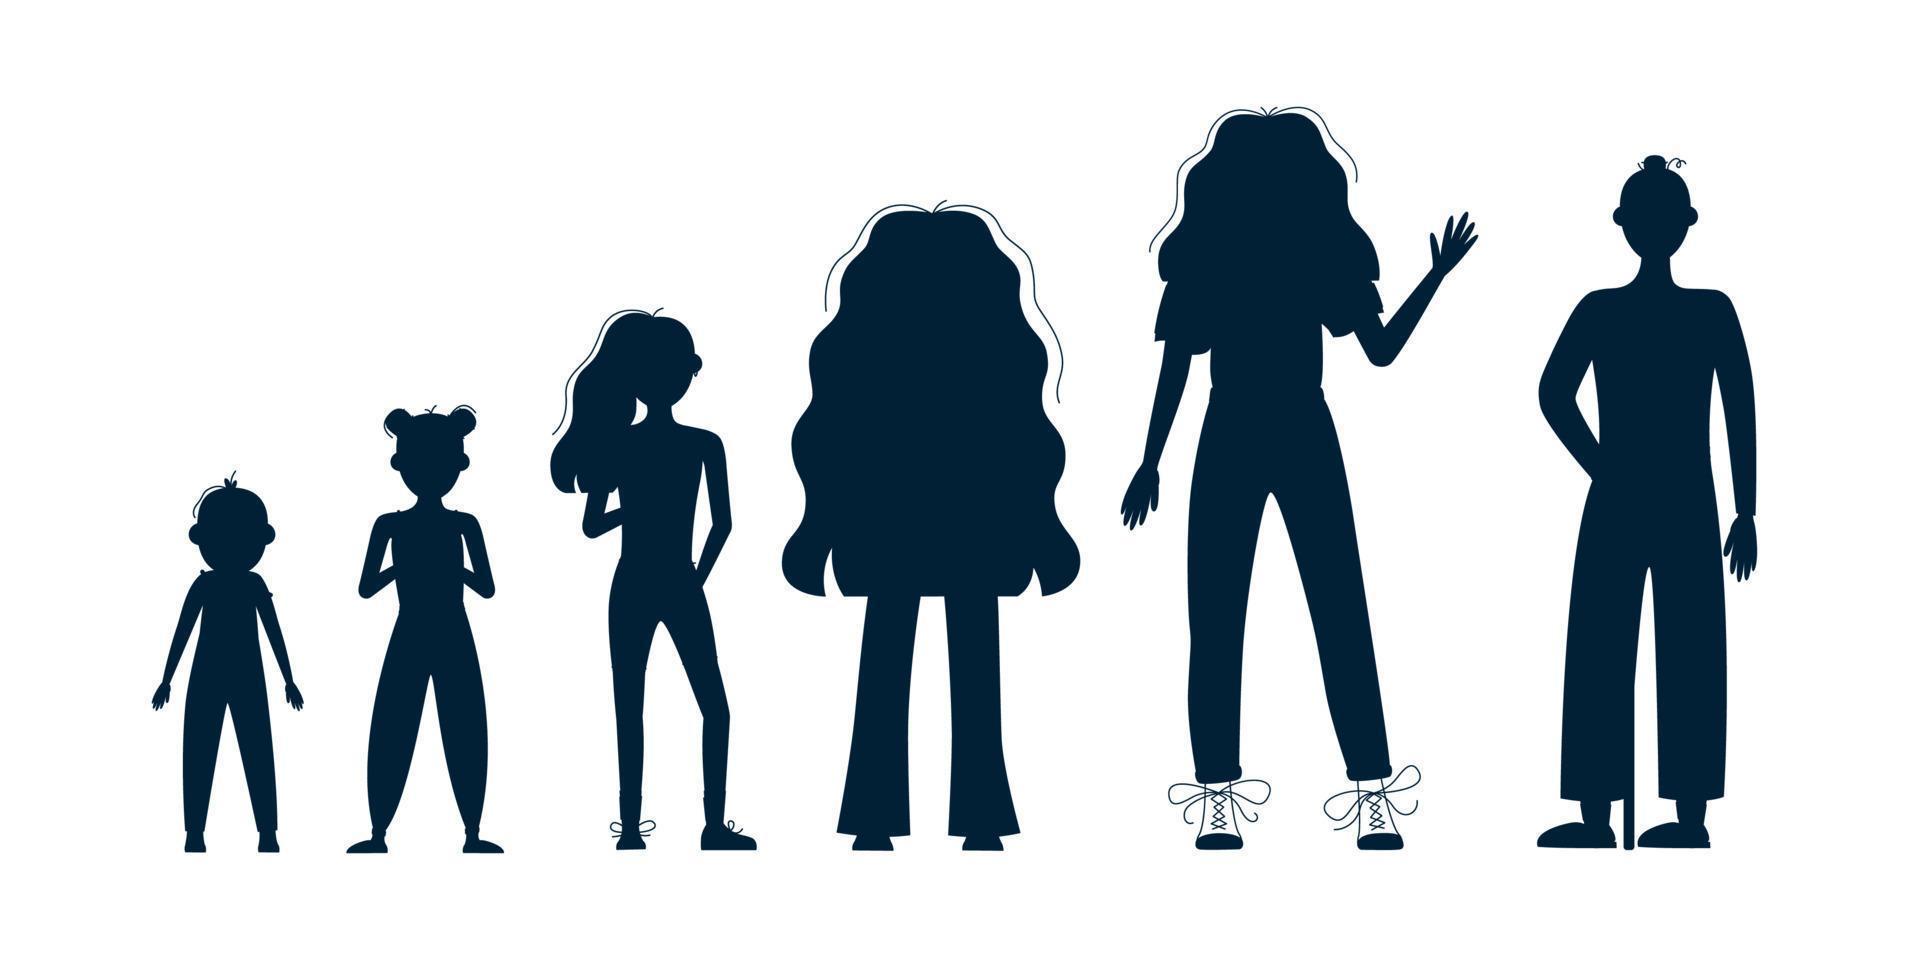 etapas de crecimiento del personaje femenino, conjunto de silueta vectorial del proceso de envejecimiento. desarrollo de bebés, adolescentes, adultos y ancianos. vector